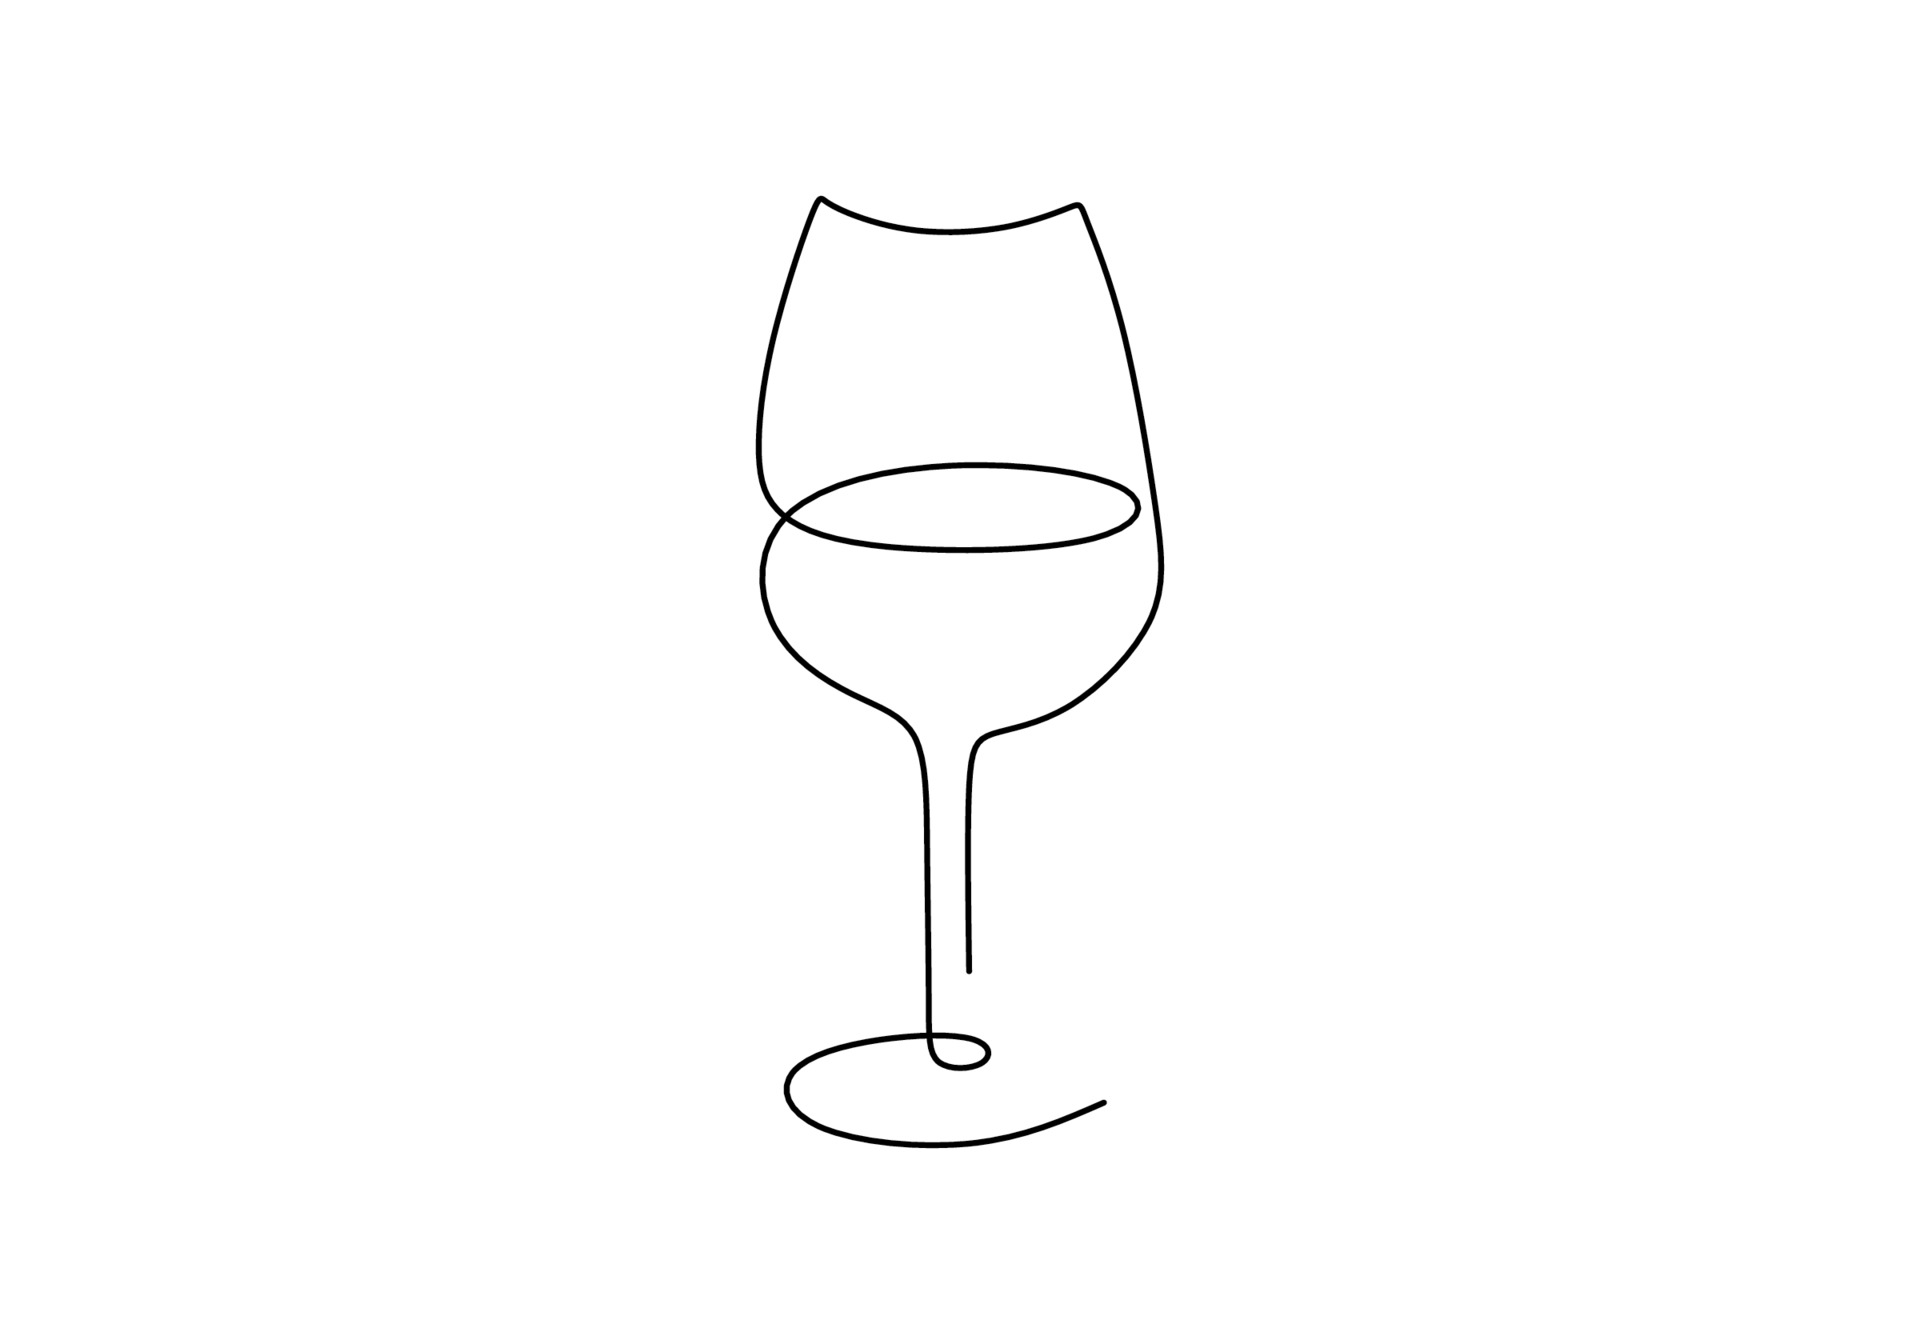 verpleegster buurman Blind continu een lijntekening van een glas wijn. champagne en het drinken van  wijn uit een glas. viering partij concept geïsoleerd op een witte  achtergrond. minimalistische stijlvolle kunst. vector illustratie 2100278 -  Download